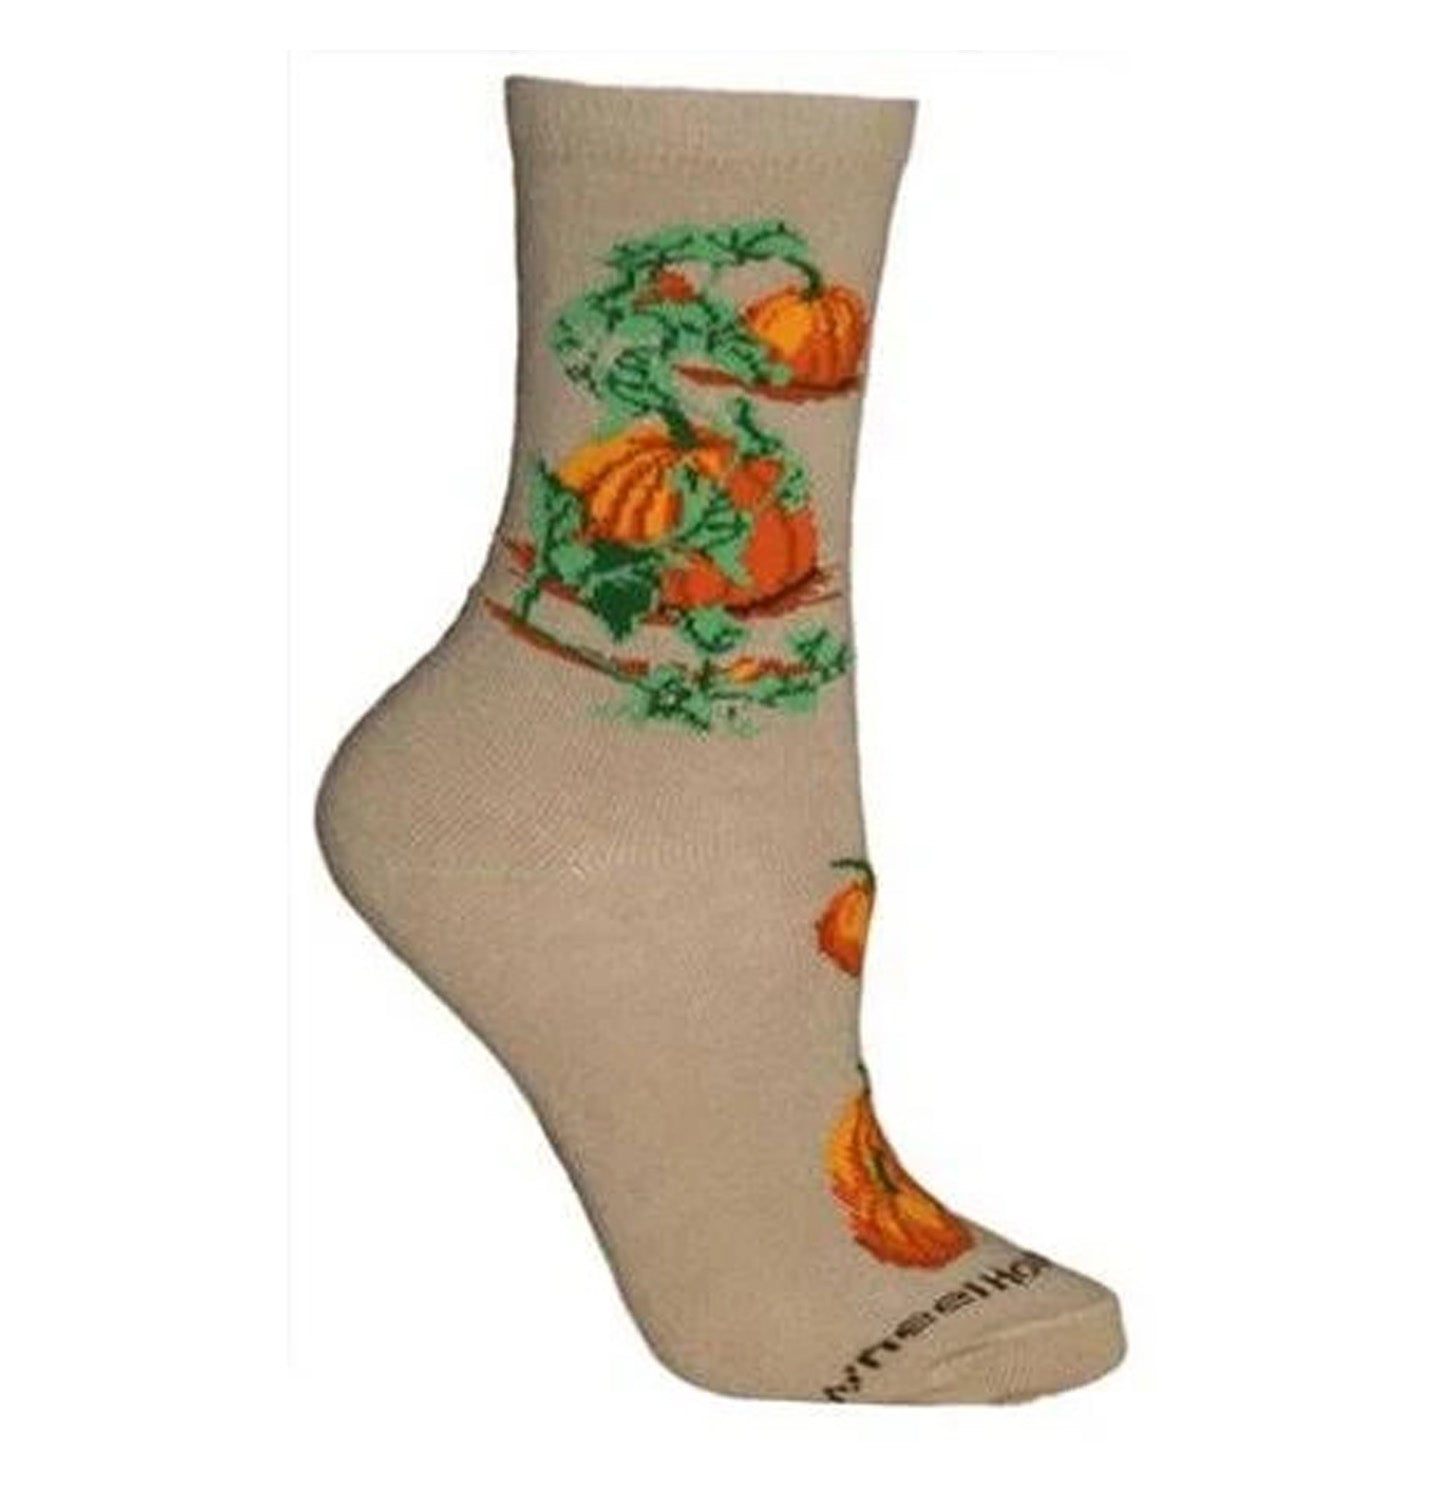 Animal Pride - Pumpkins on Tan - Adult Cotton Crew Socks